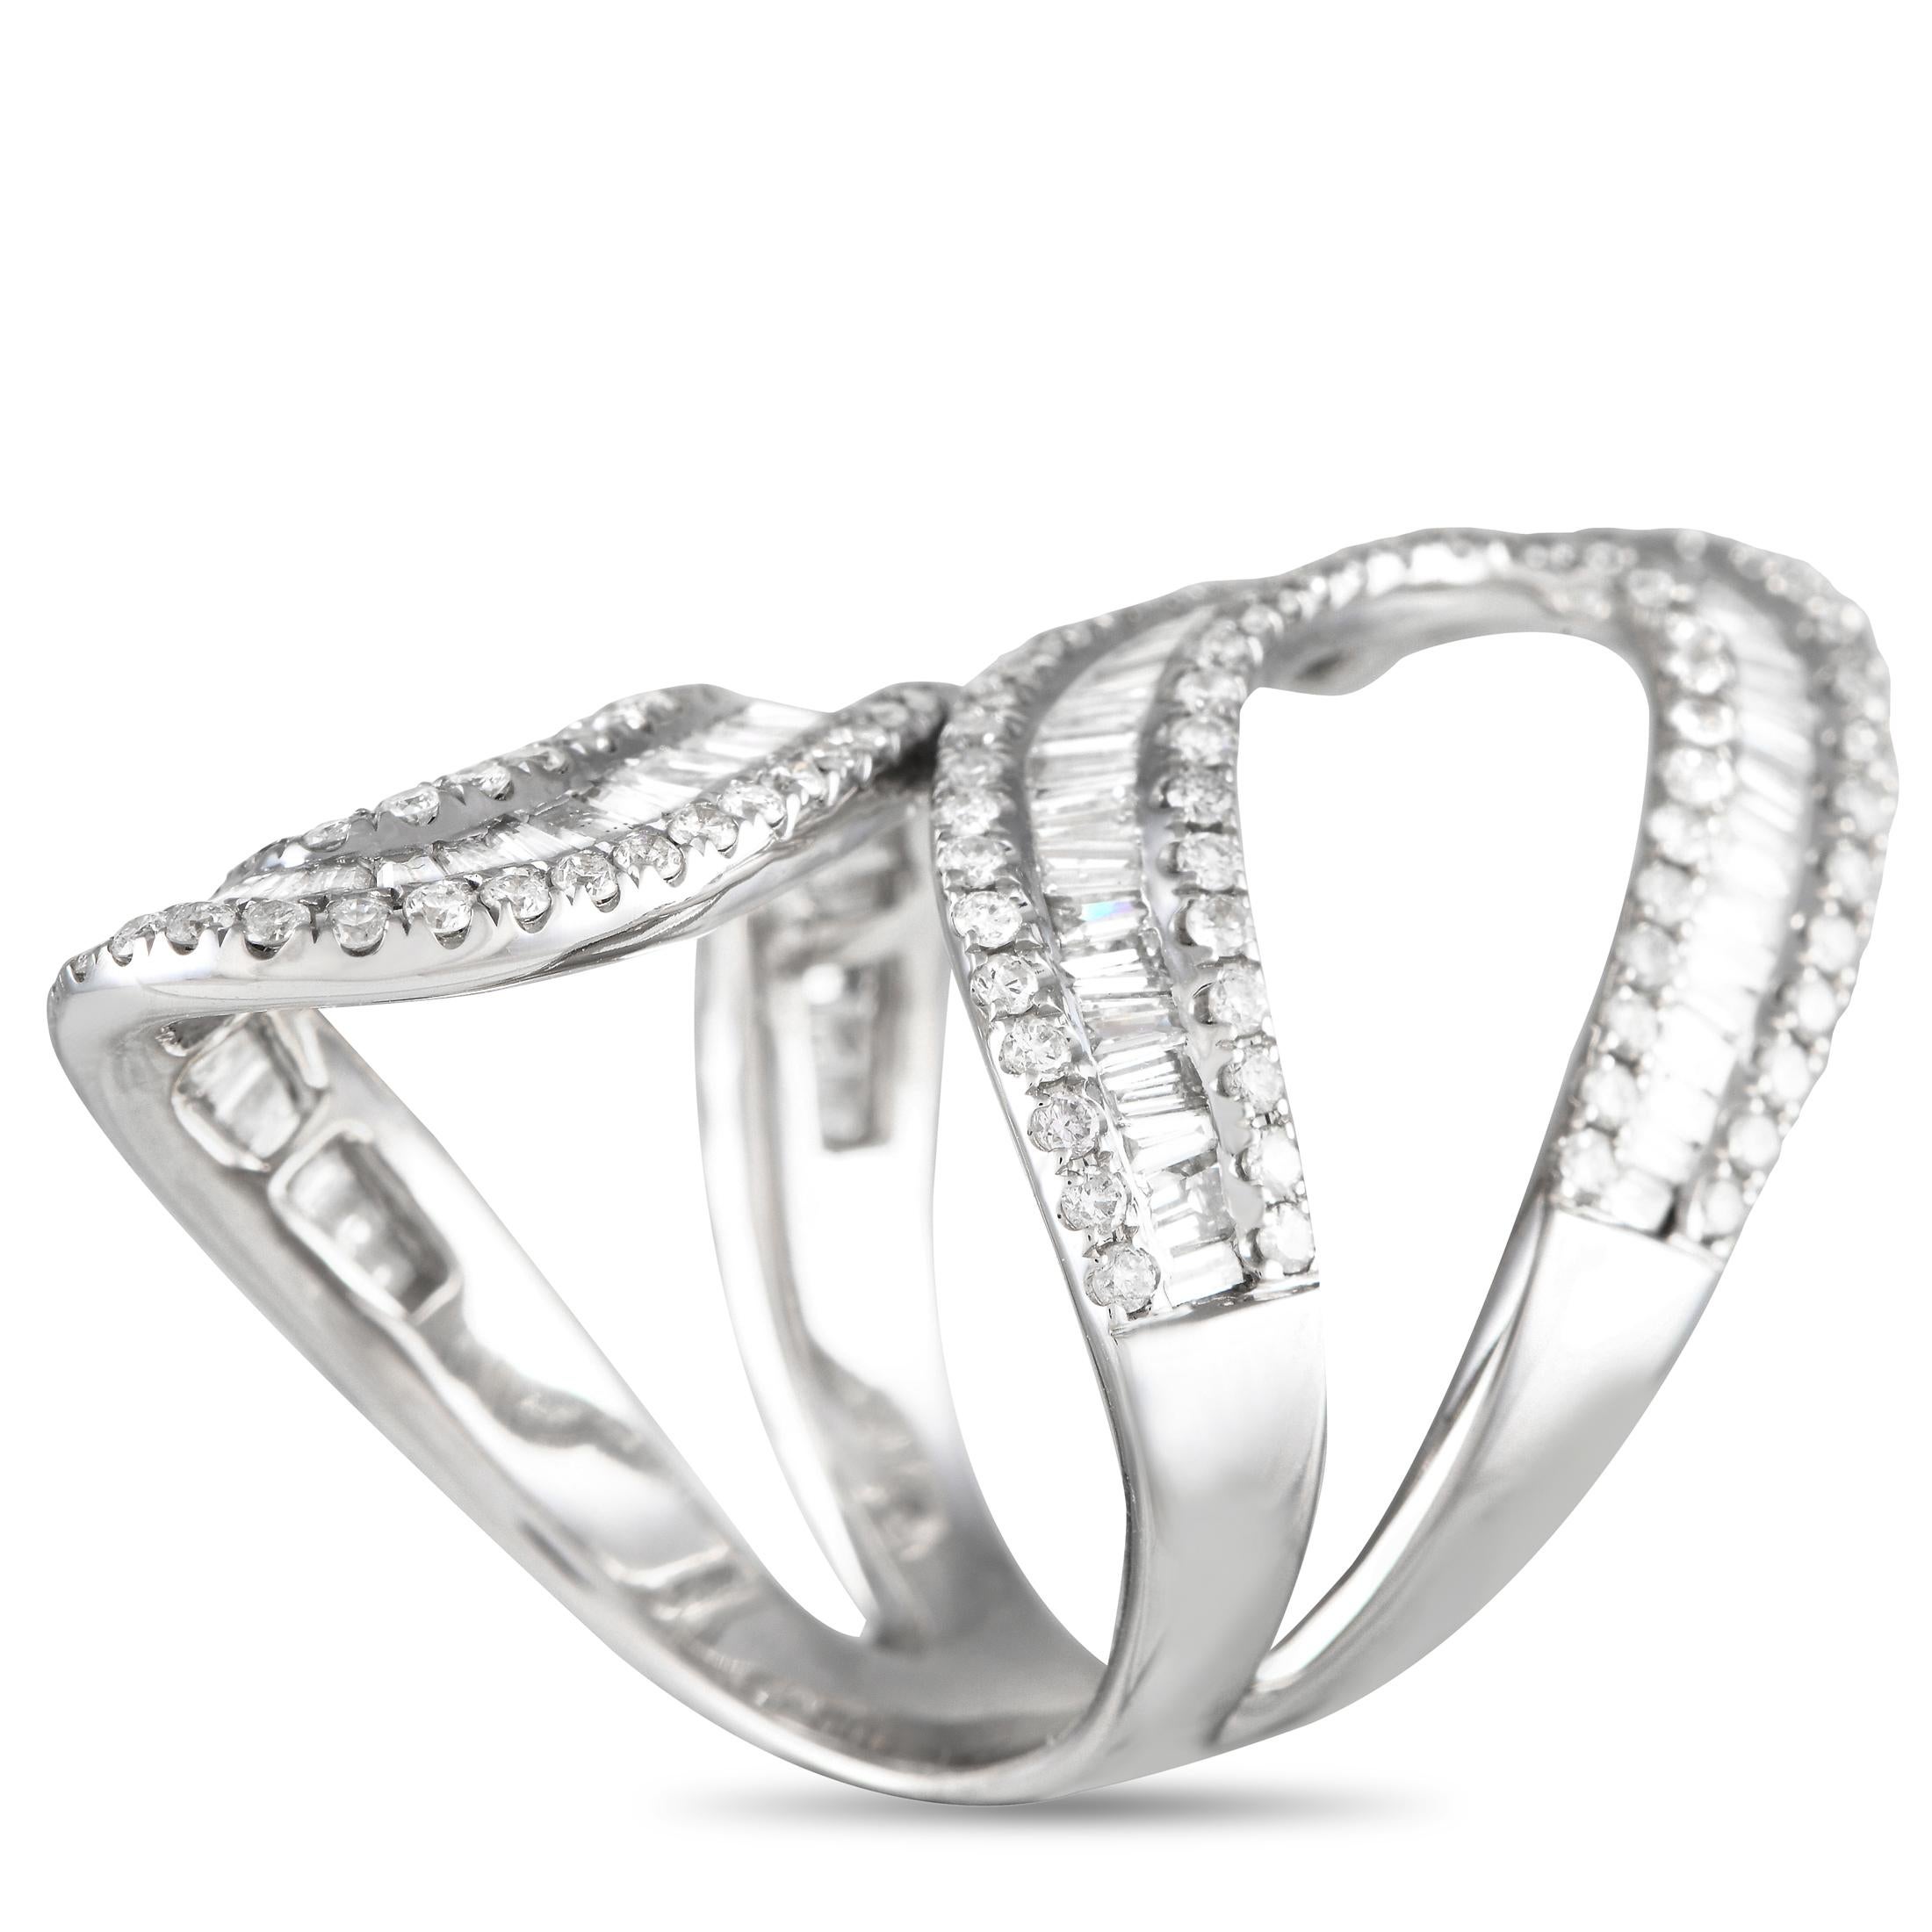 Une ravissante babiole qui vous aidera à rehausser votre style en un instant. Cette bague galbée en or blanc 14 carats présente un anneau fendu tourbillonnant qui enveloppe le doigt avec élégance. La silhouette en forme de ruban du bracelet met en